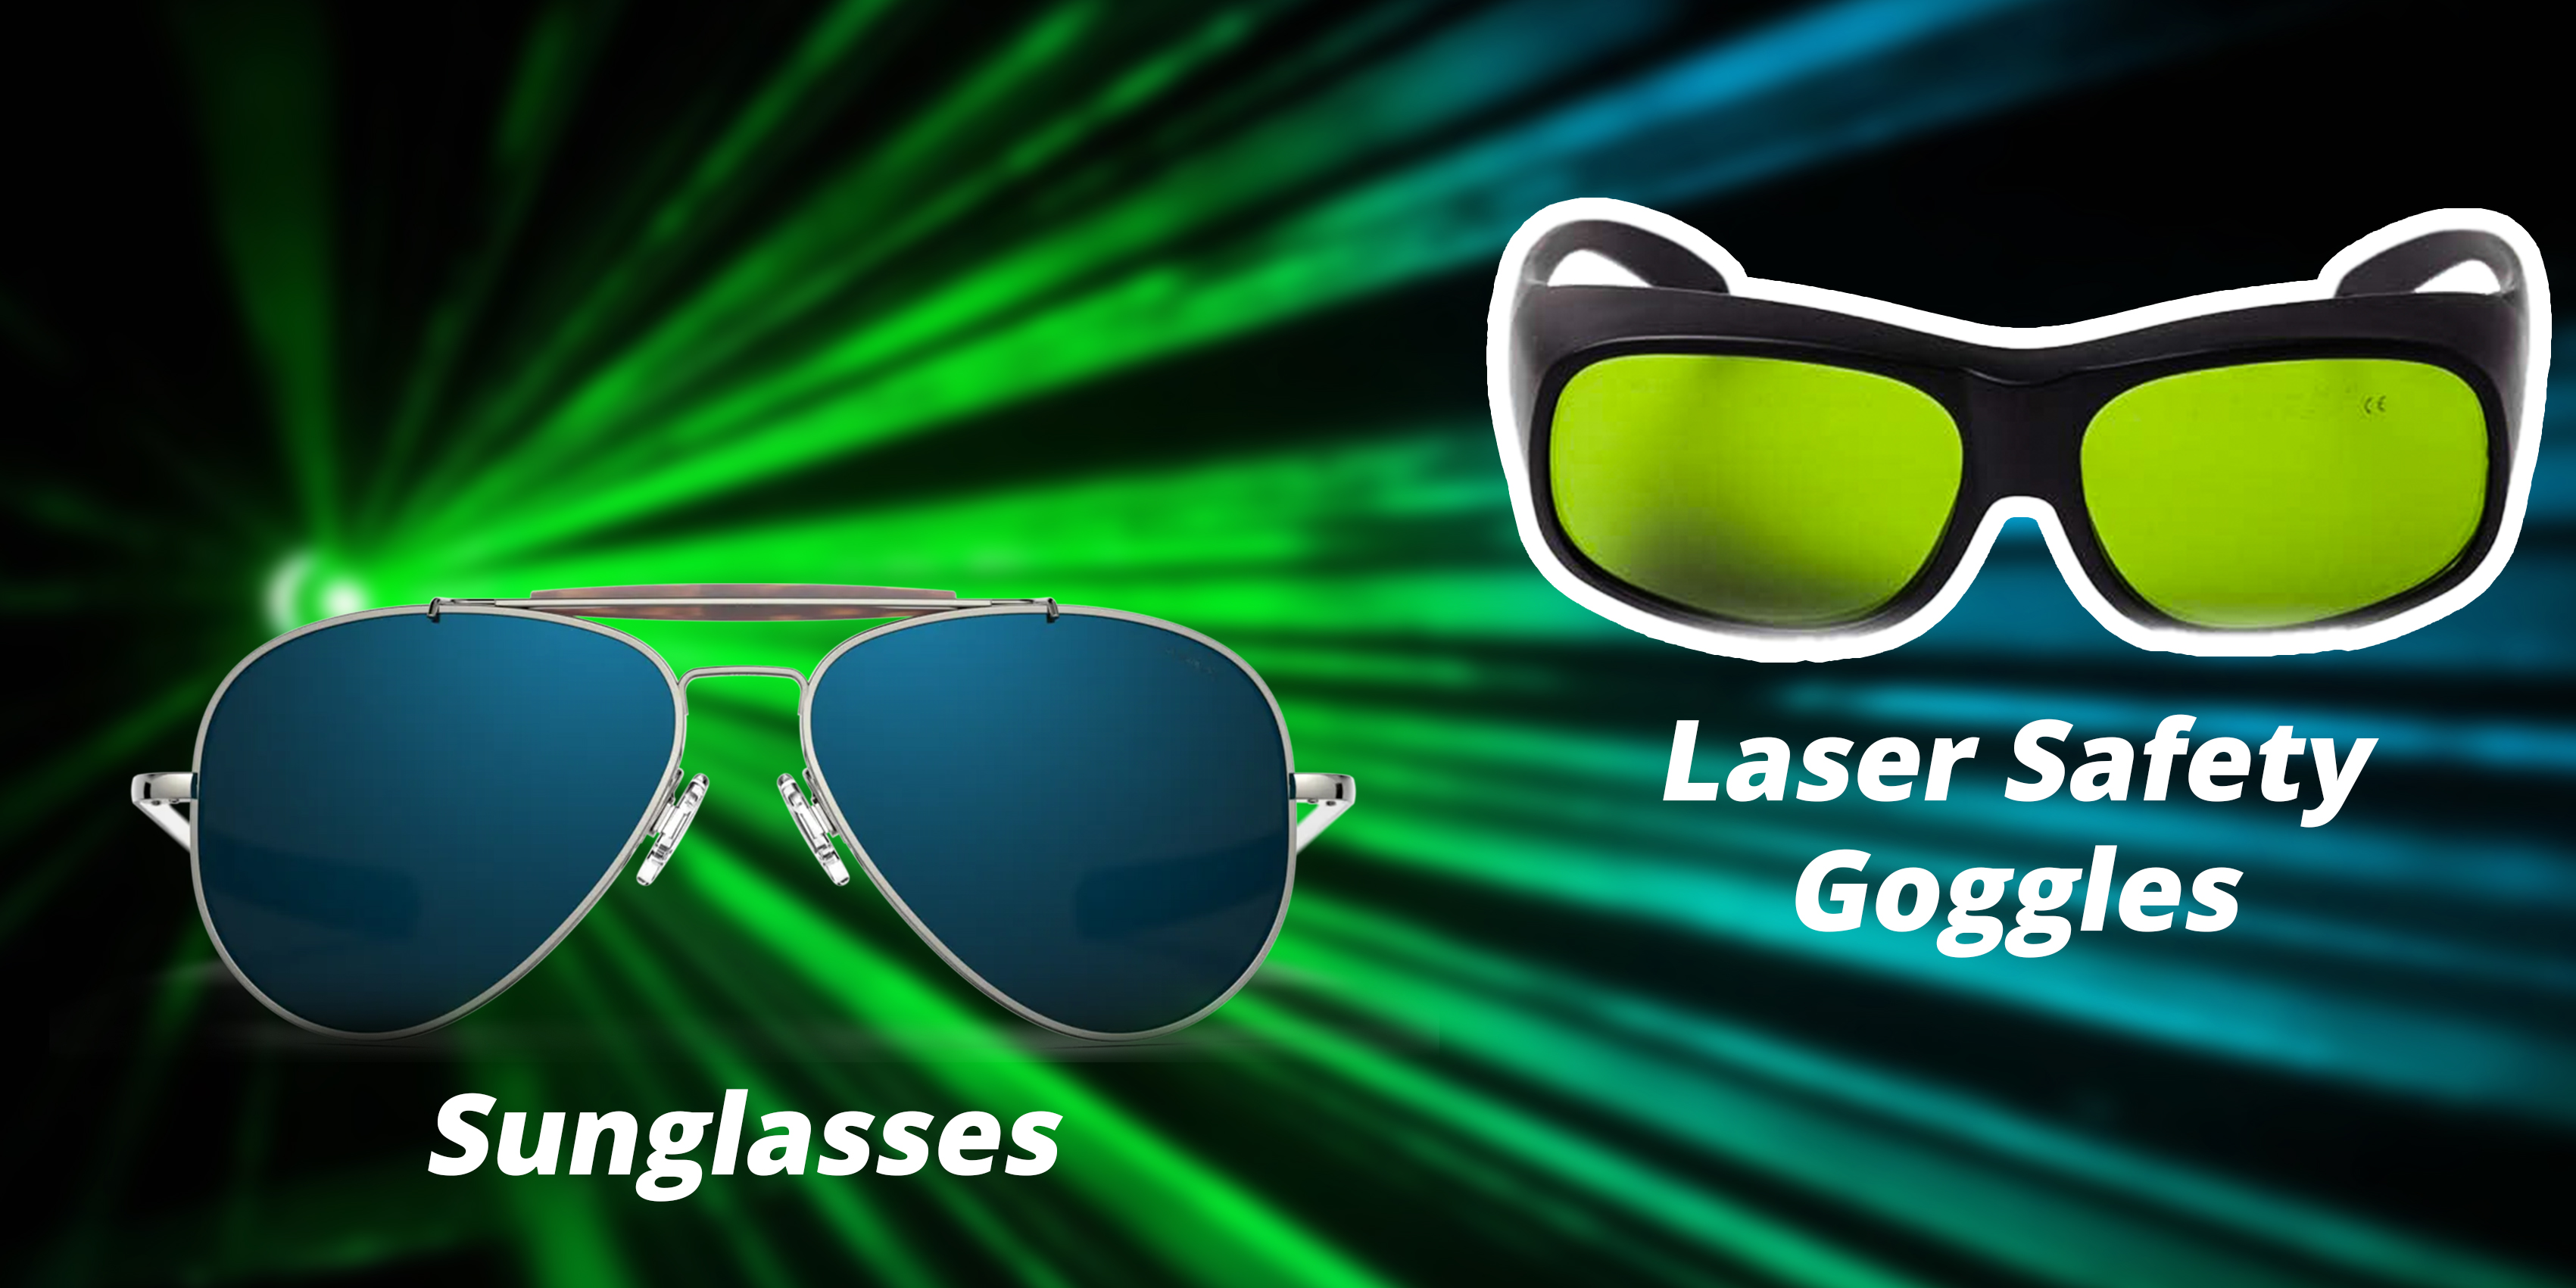 Lunettes de soleil ou lunettes laser : lesquelles choisir pour la protection laser ?